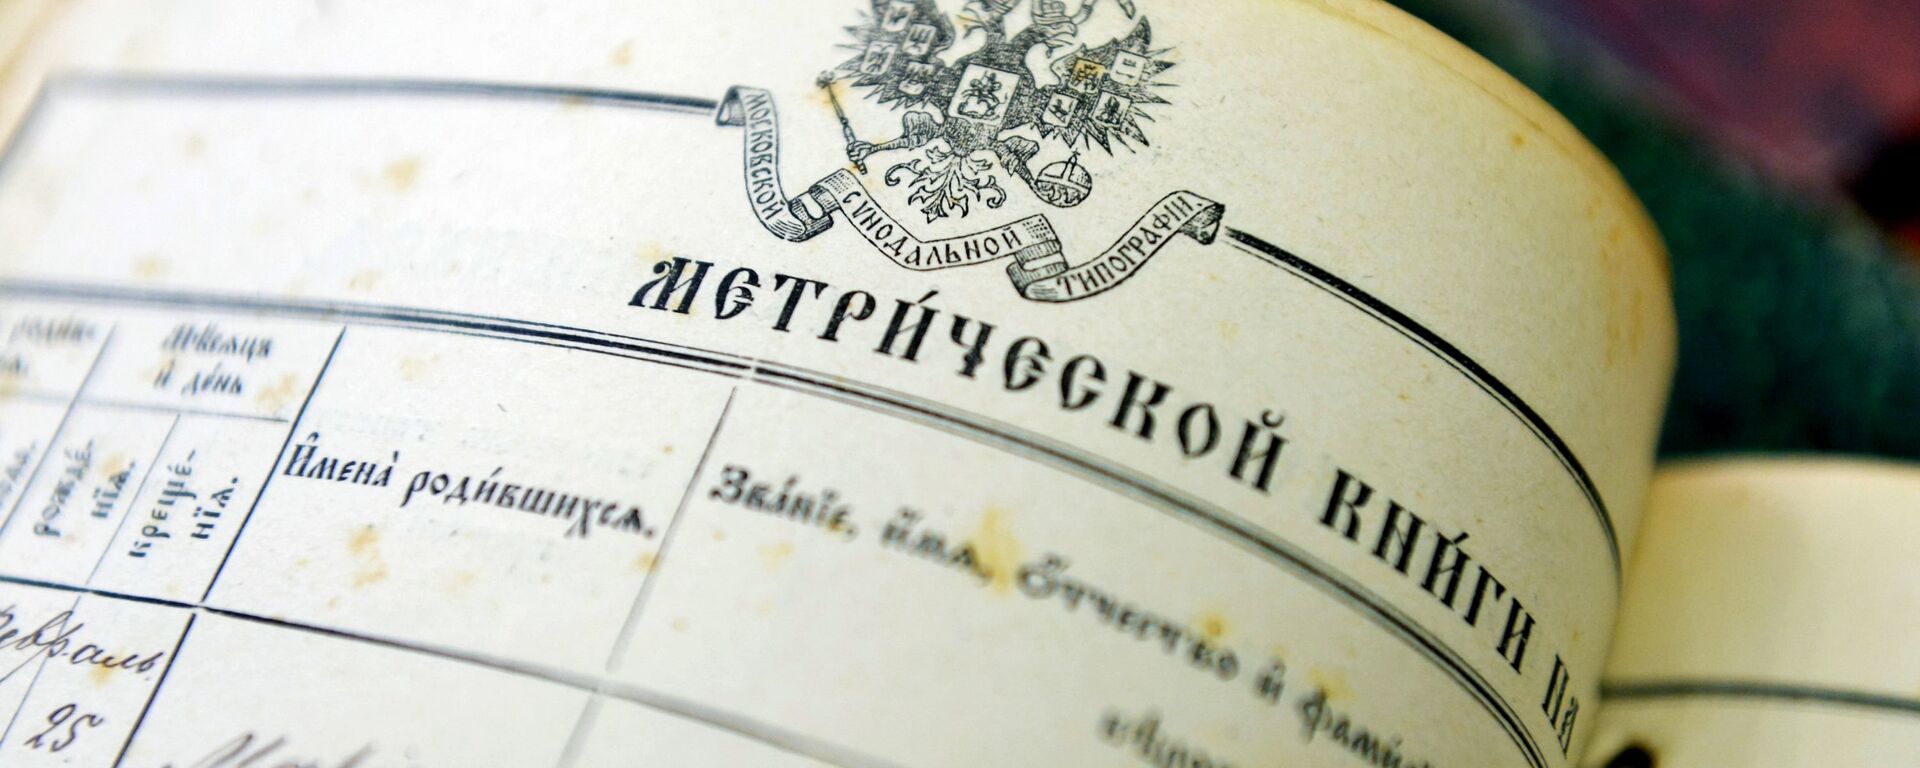 Документы Национального исторического архива Республики Беларусь - Sputnik Беларусь, 1920, 17.02.2017